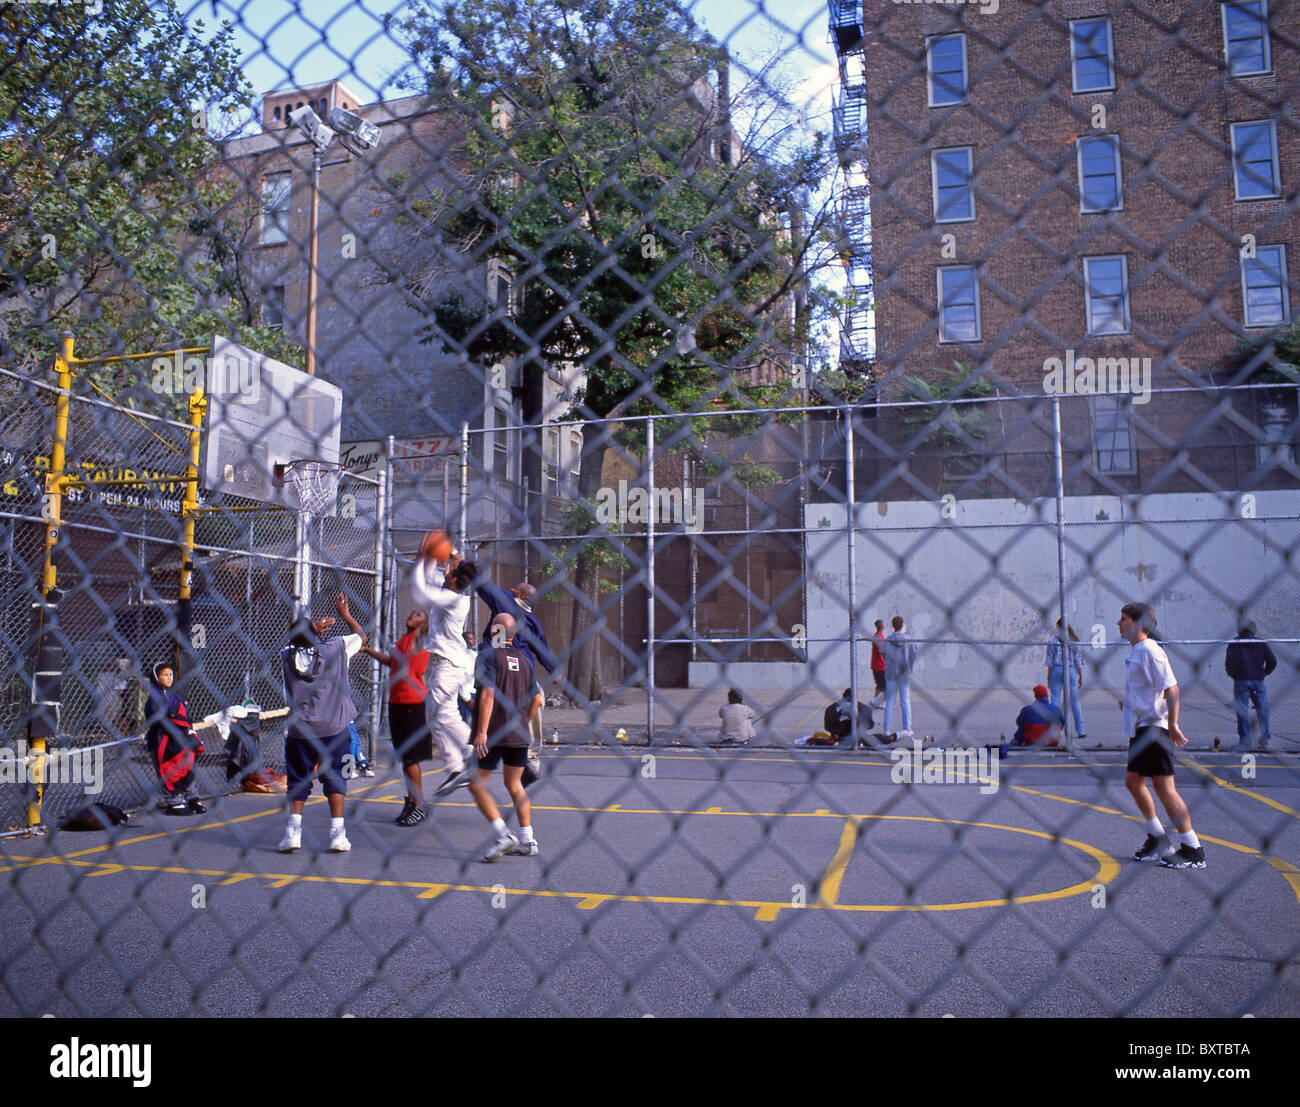 La città interna pallacanestro, Manhattan, New York, nello Stato di New York, Stati Uniti d'America Foto Stock